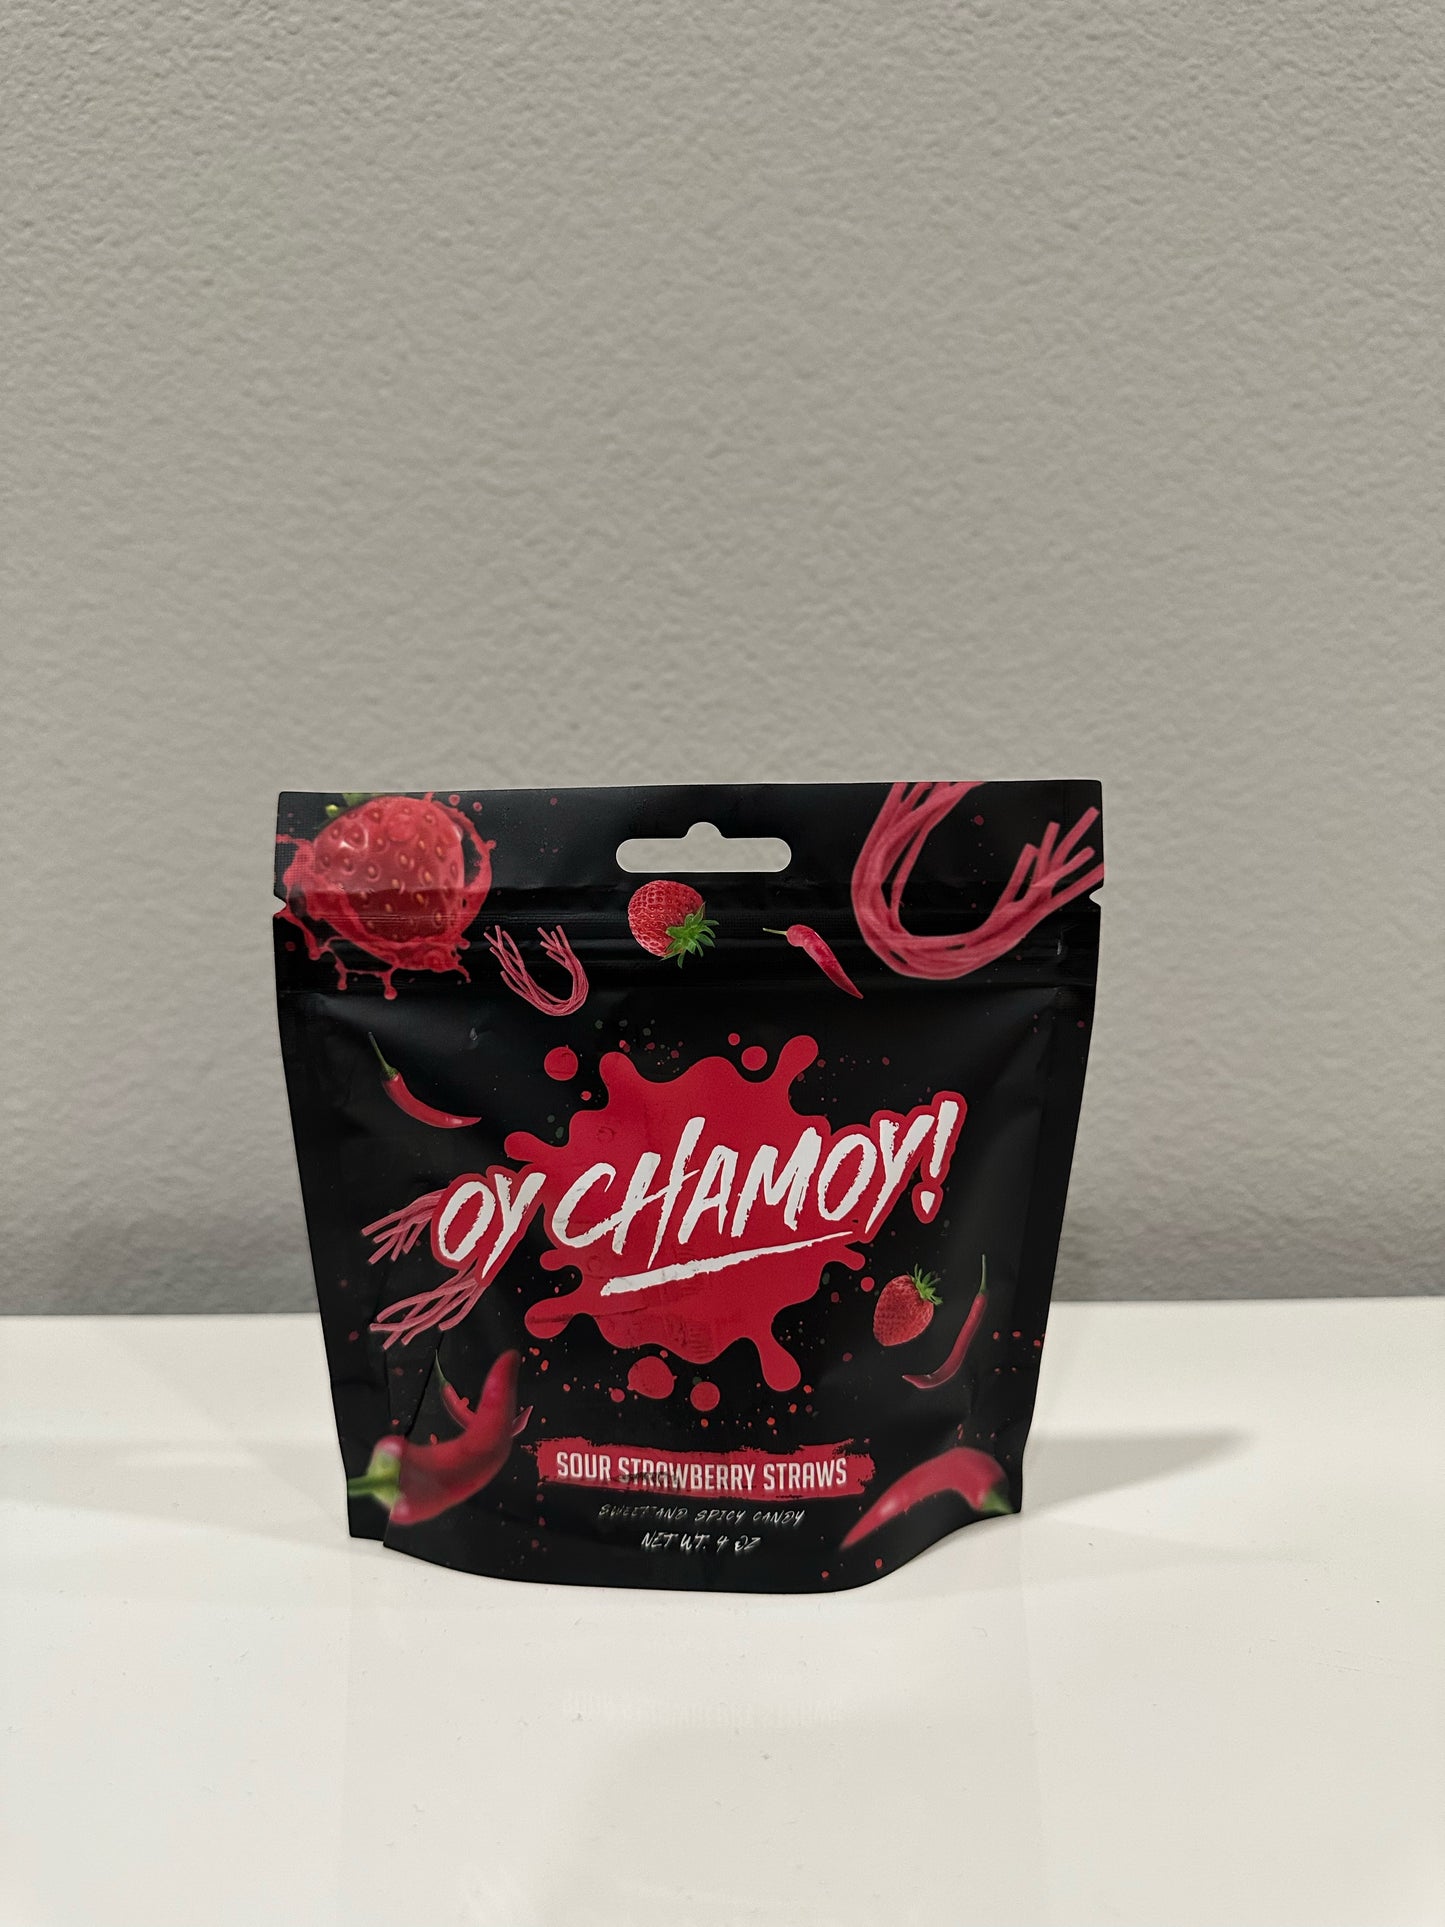 Sour Strawberry Straws- Oy Chamoy